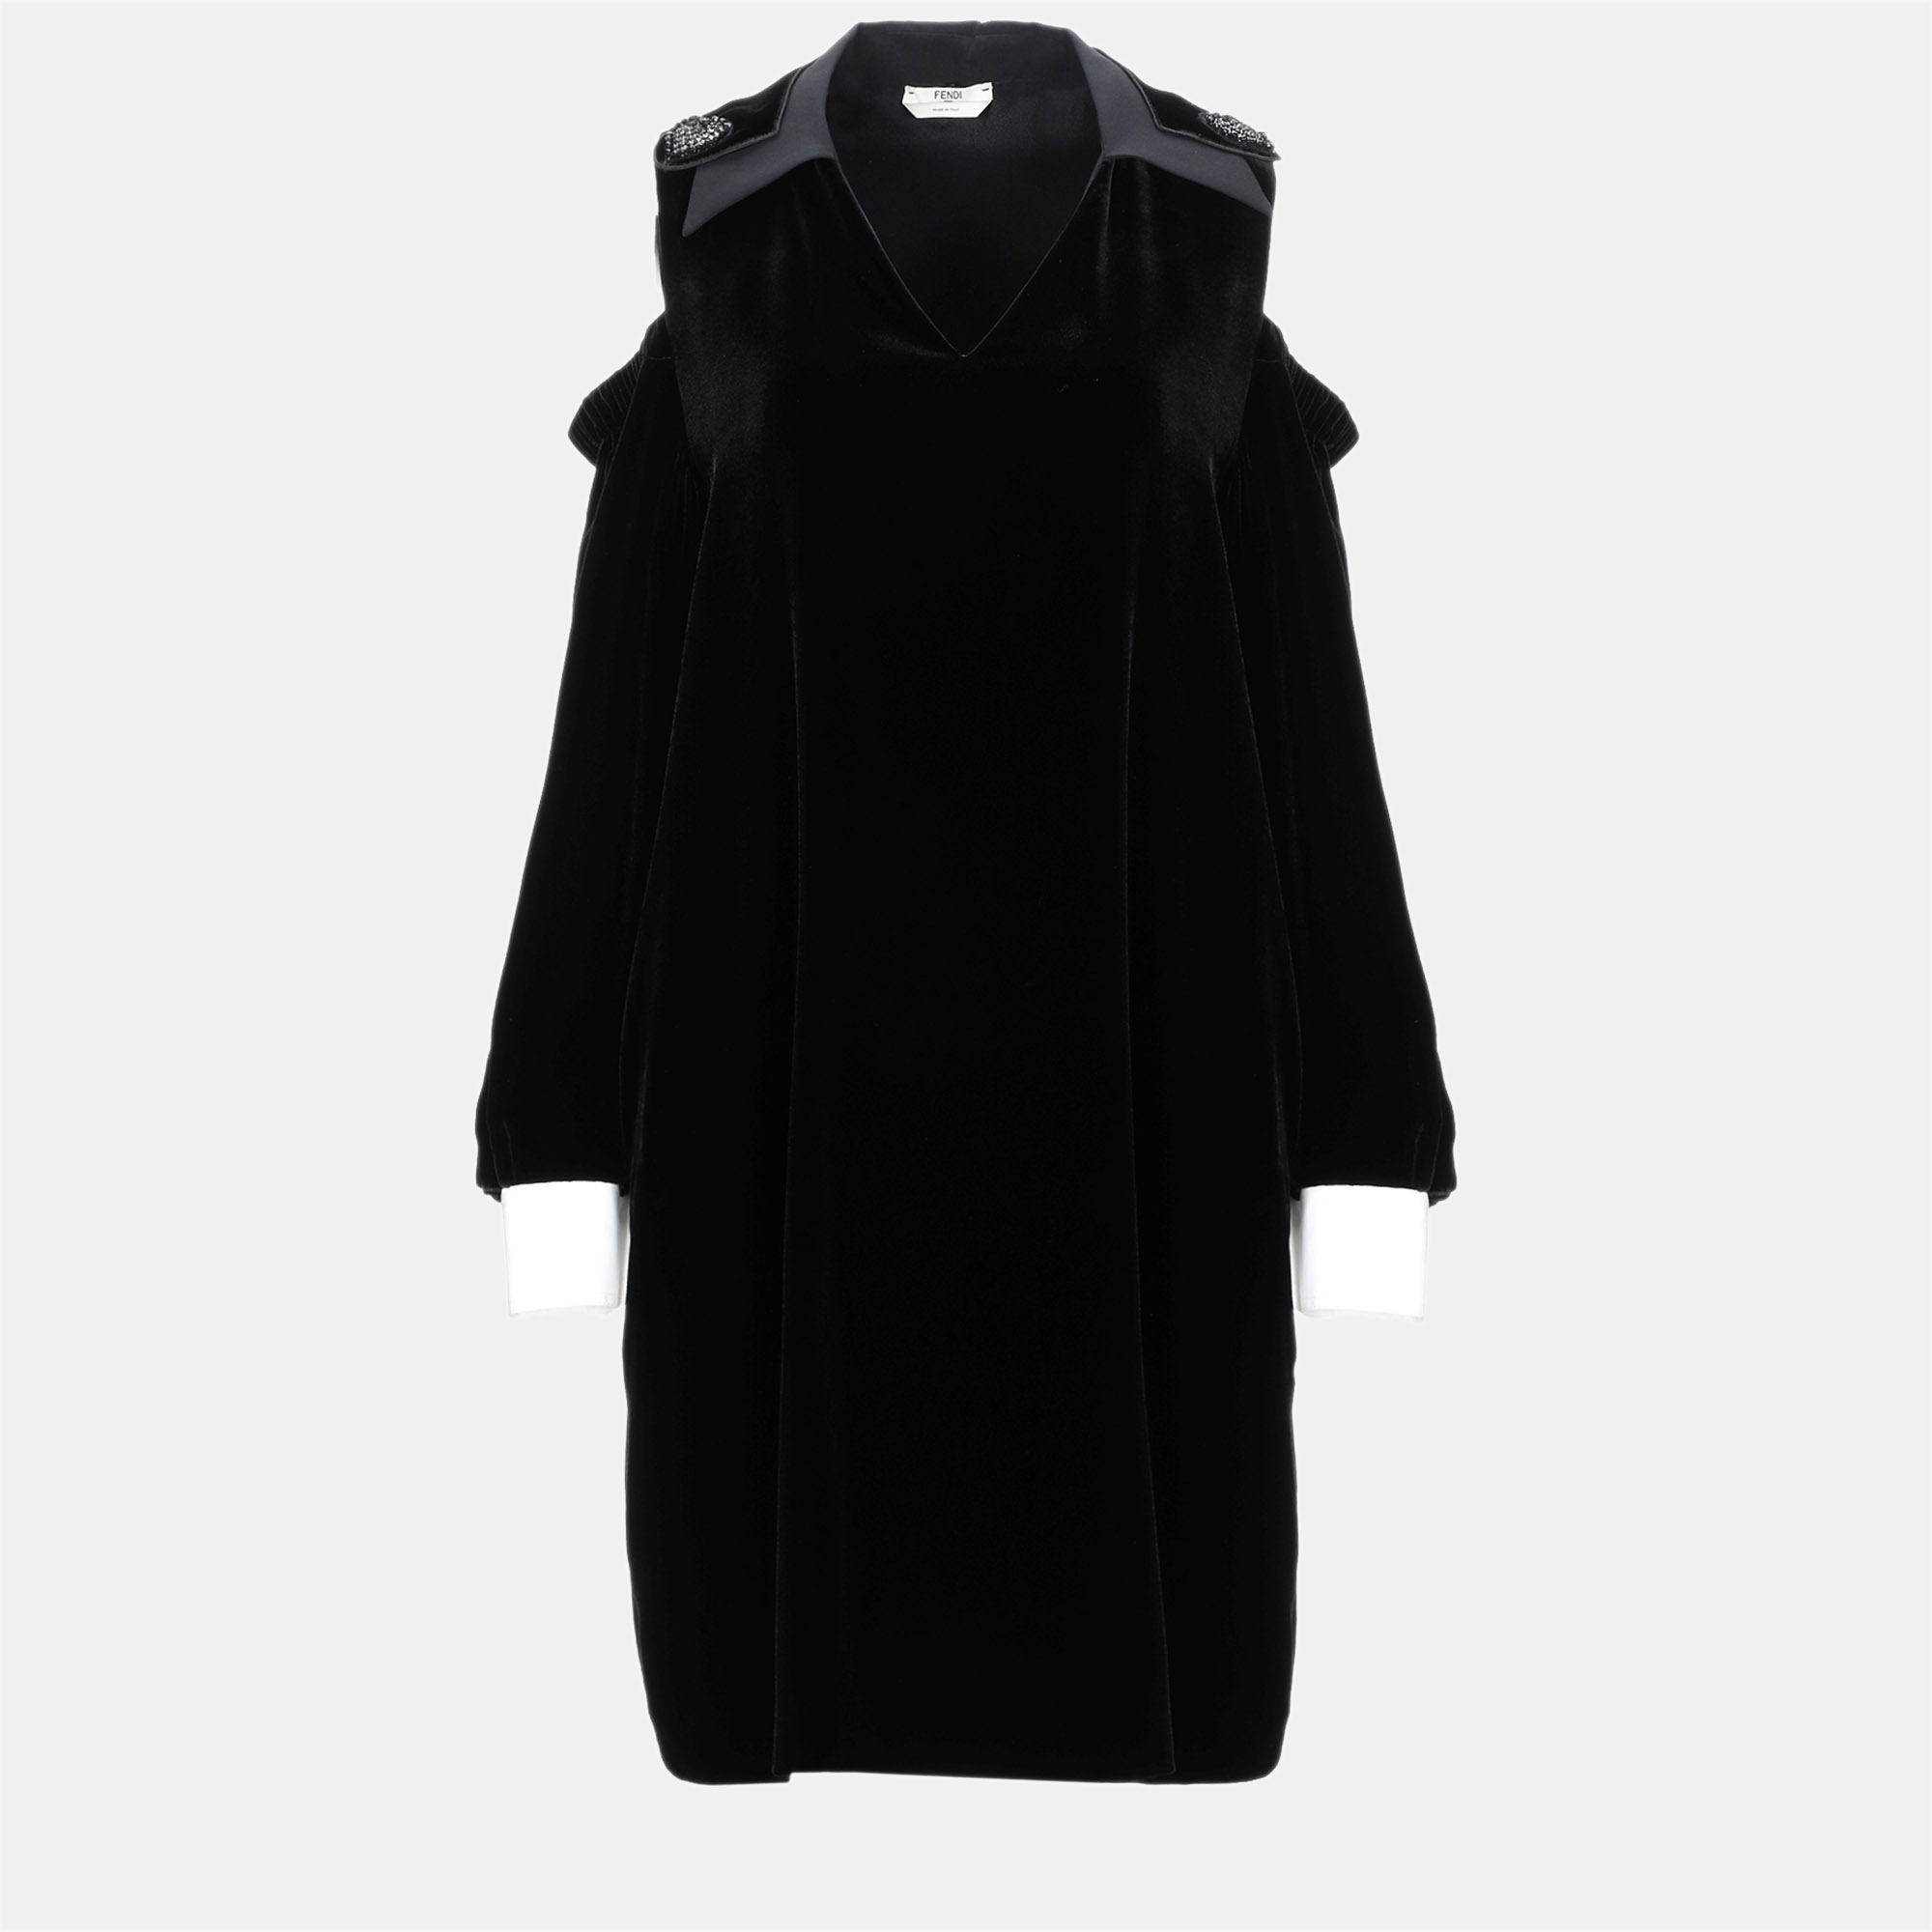 Fendi black velvet collared mini dress s (it 40)